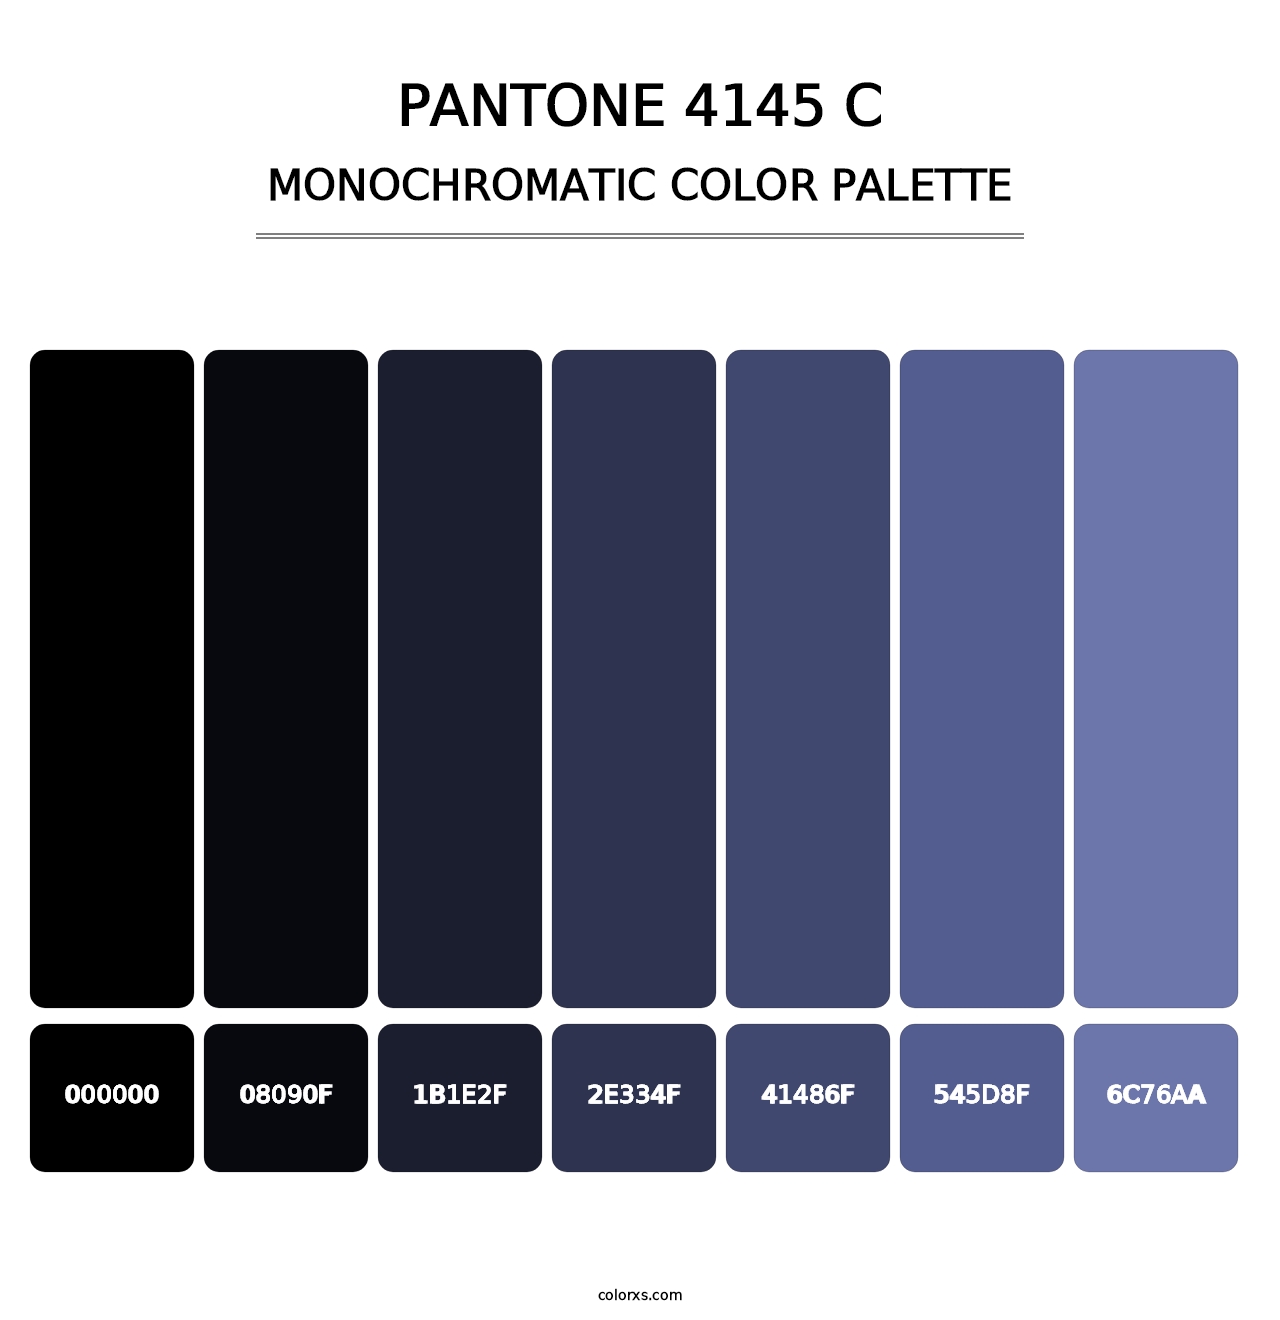 PANTONE 4145 C - Monochromatic Color Palette